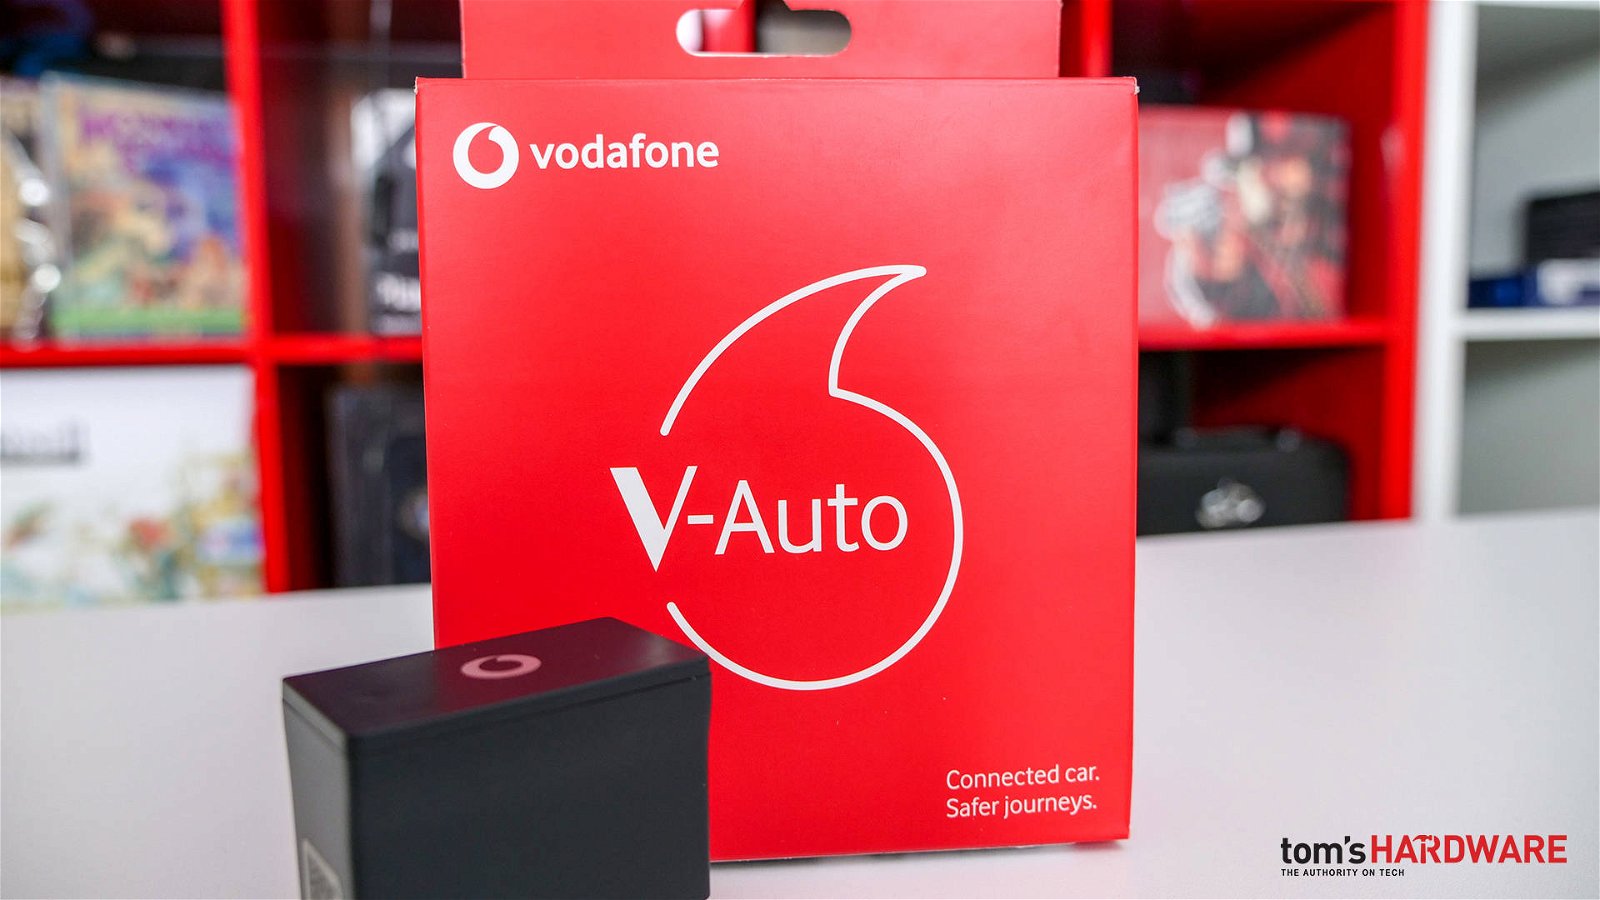 Immagine di V-Auto by Vodafone, un gadget per guidare in sicurezza e tranquillità